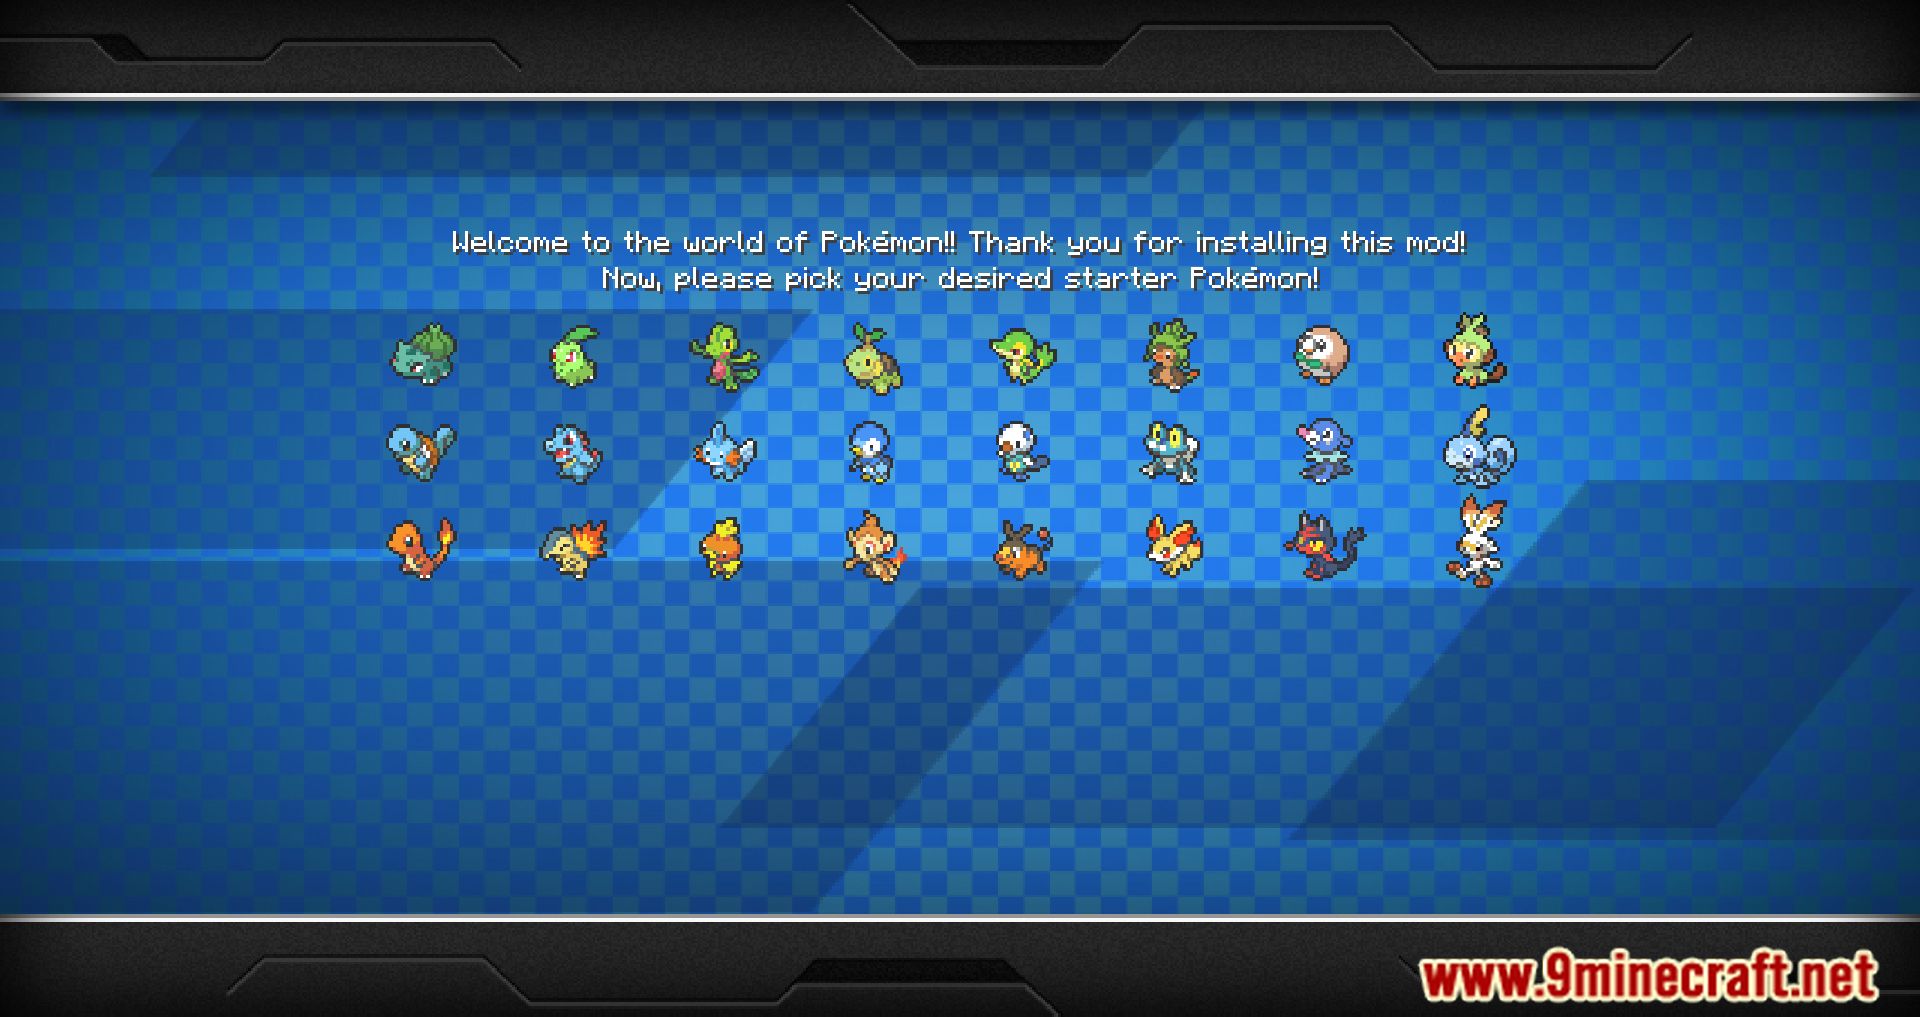 Poke Tracker Mod (1.12.2) - Display The Last Spawns Of Pokémon 2